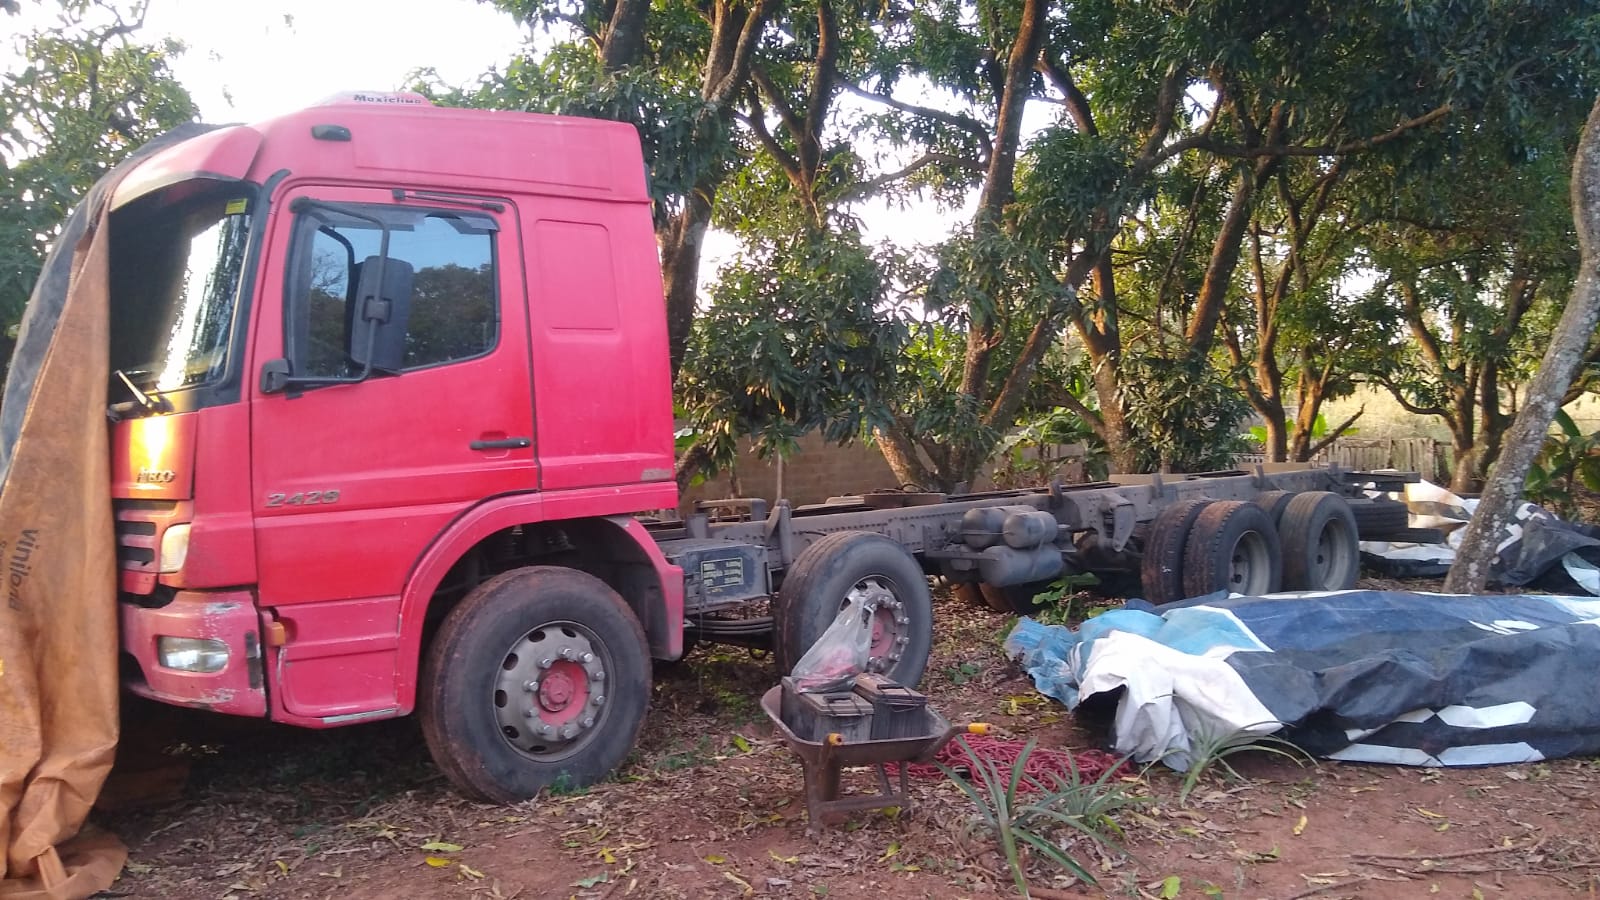 Buscas revelaram que veículo estava em uma área rural no Estado do Paraná